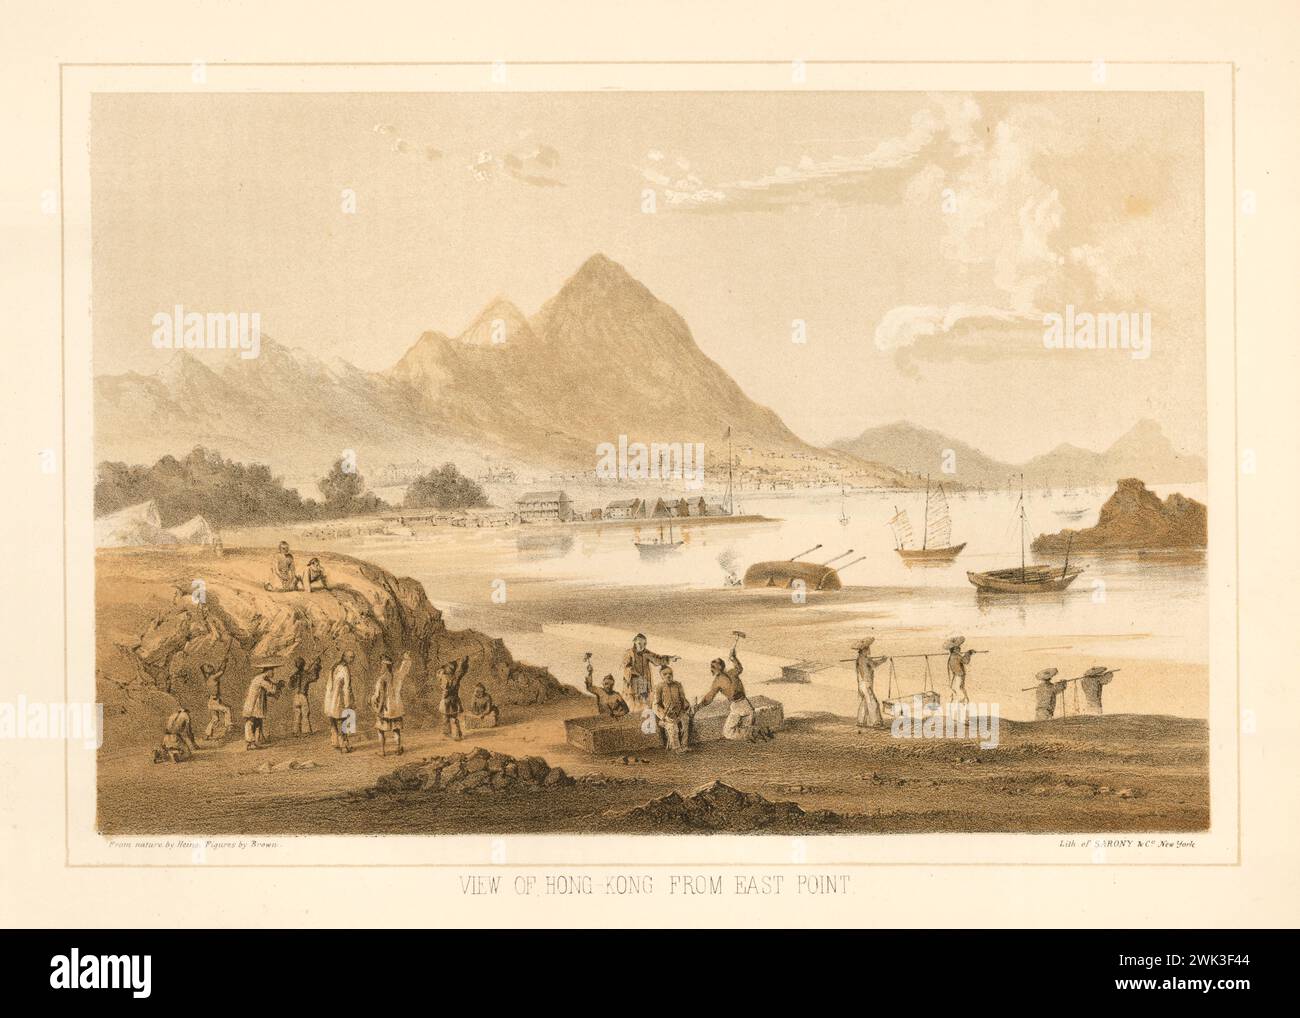 Farb-Lithografie. Blick auf Hongkong vom East Point, William Heine 1850 Zeigt die kleine Stadt Hong Kong auf der anderen Seite der Causeway Bay. Im Vordergrund bauen Chinesen Steine zum Bauen ab. Kellett Island. Der Victoria Peak ist in der Nähe. Stockfoto